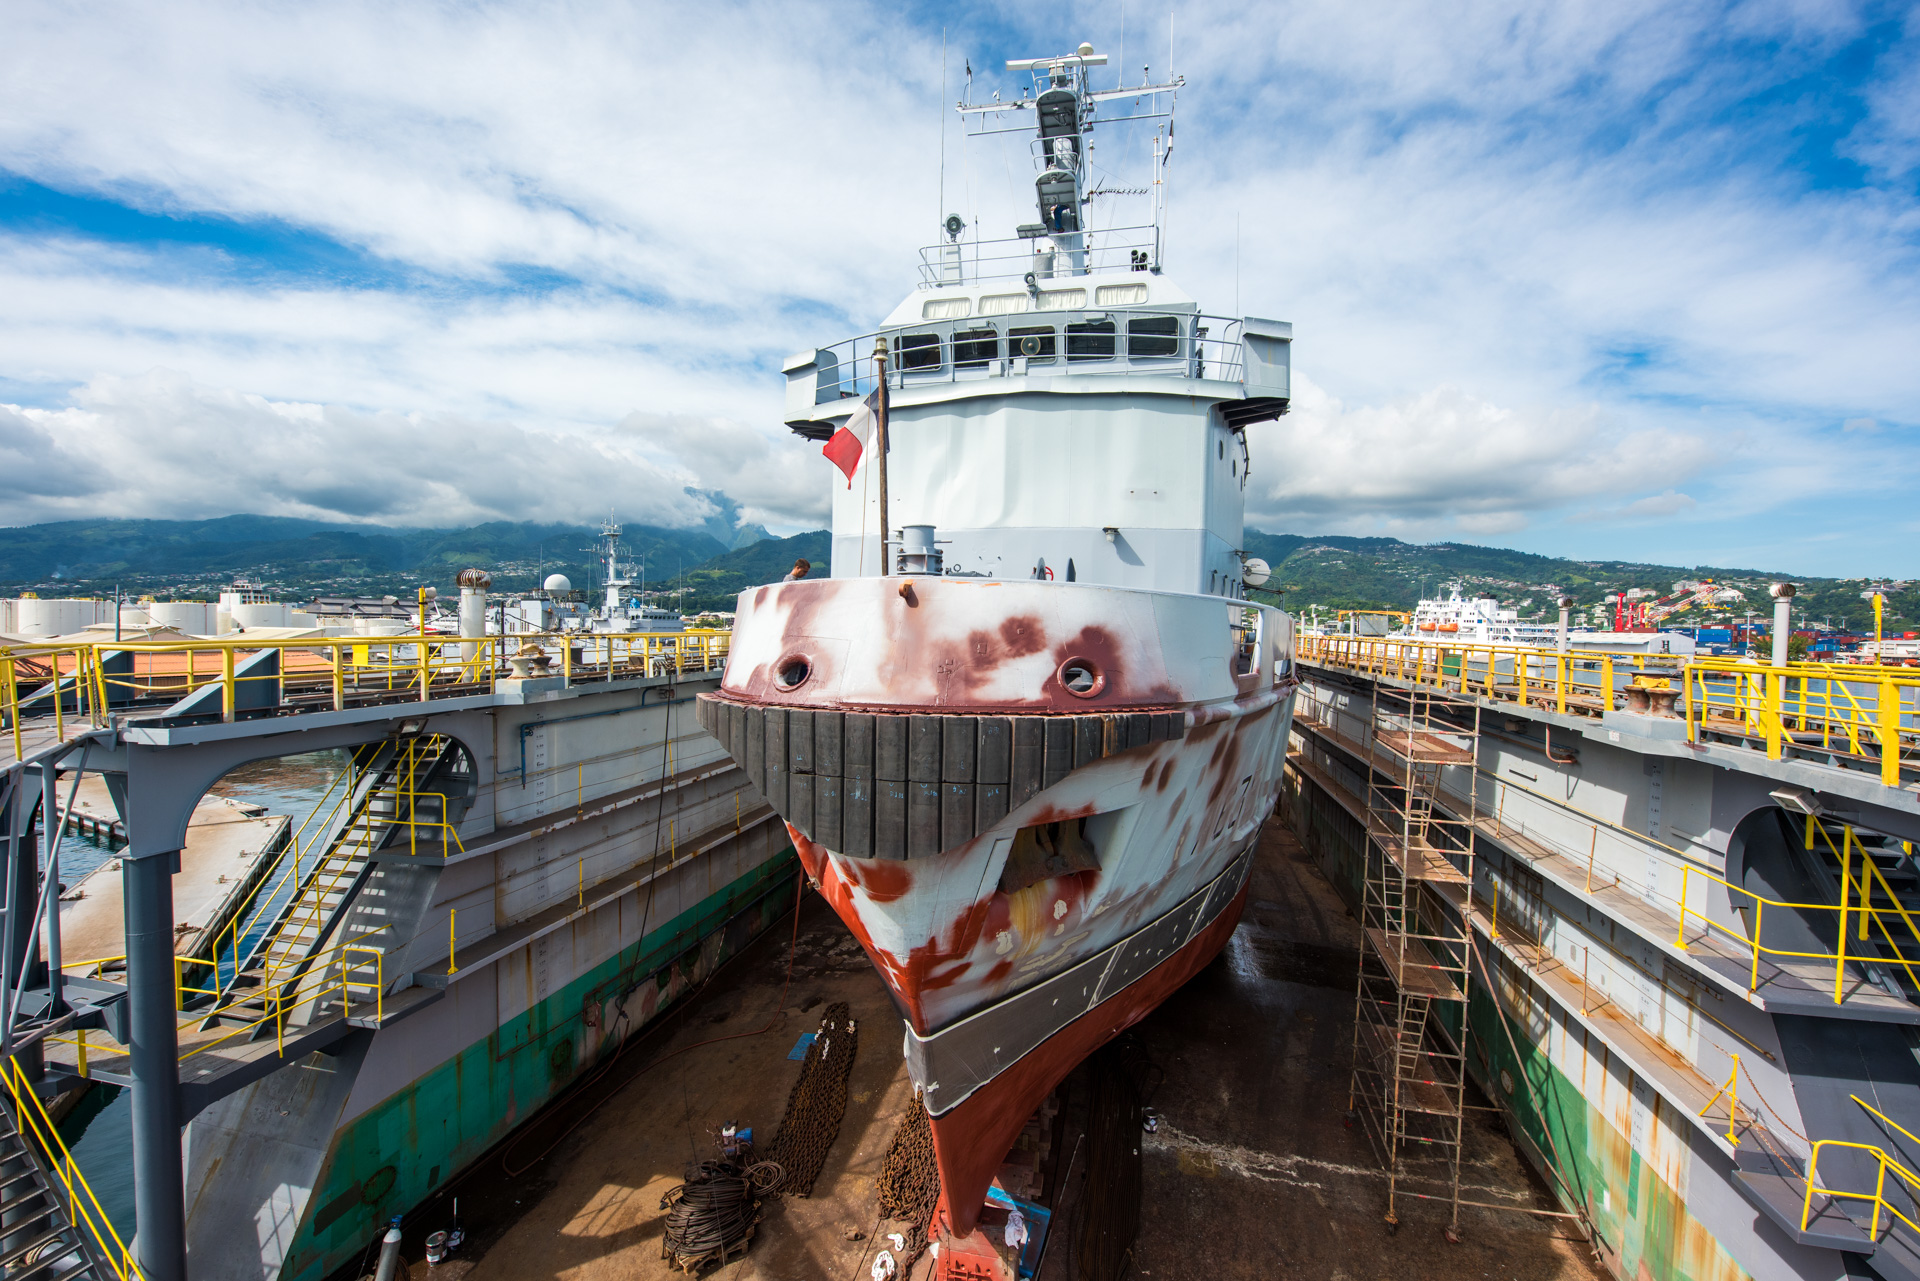 Le dock flottant de Fare Ute avec le remorqueur-ravitailleur militaire le Revi à sec, la semaine dernière (Crédit photo : J-Bellenand@Marine Nationale)